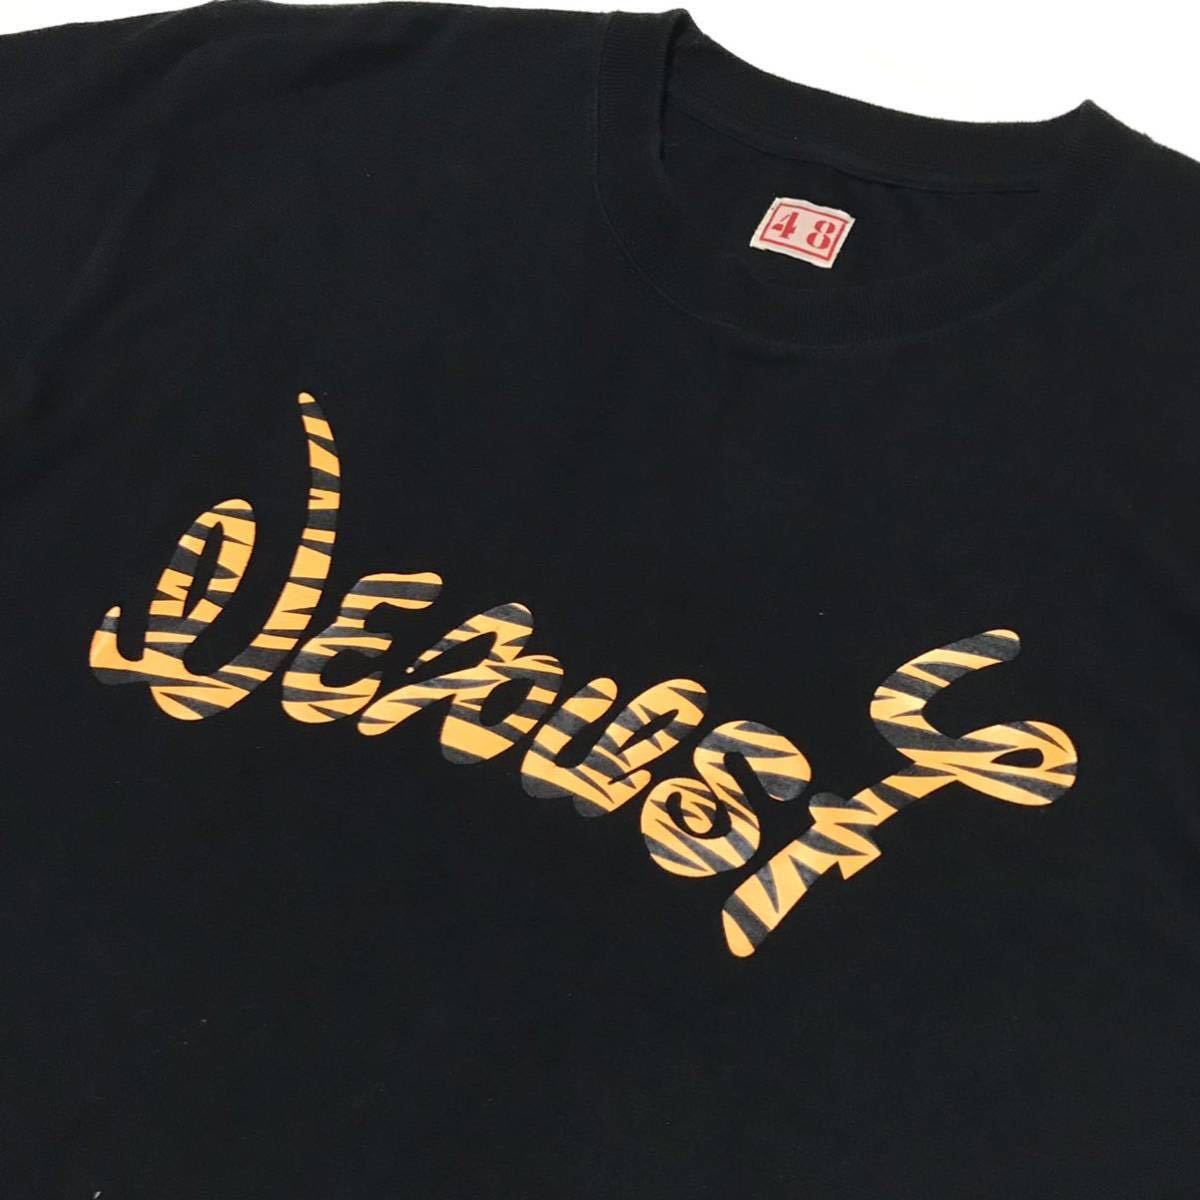 【NEXUSⅦ】ネクサス7 タイガーロゴ グラフィック Tシャツ メンズ48/L ブラック 黒 コットン 半袖Tee トラ 両面プリント USED 古着 正規品の画像4